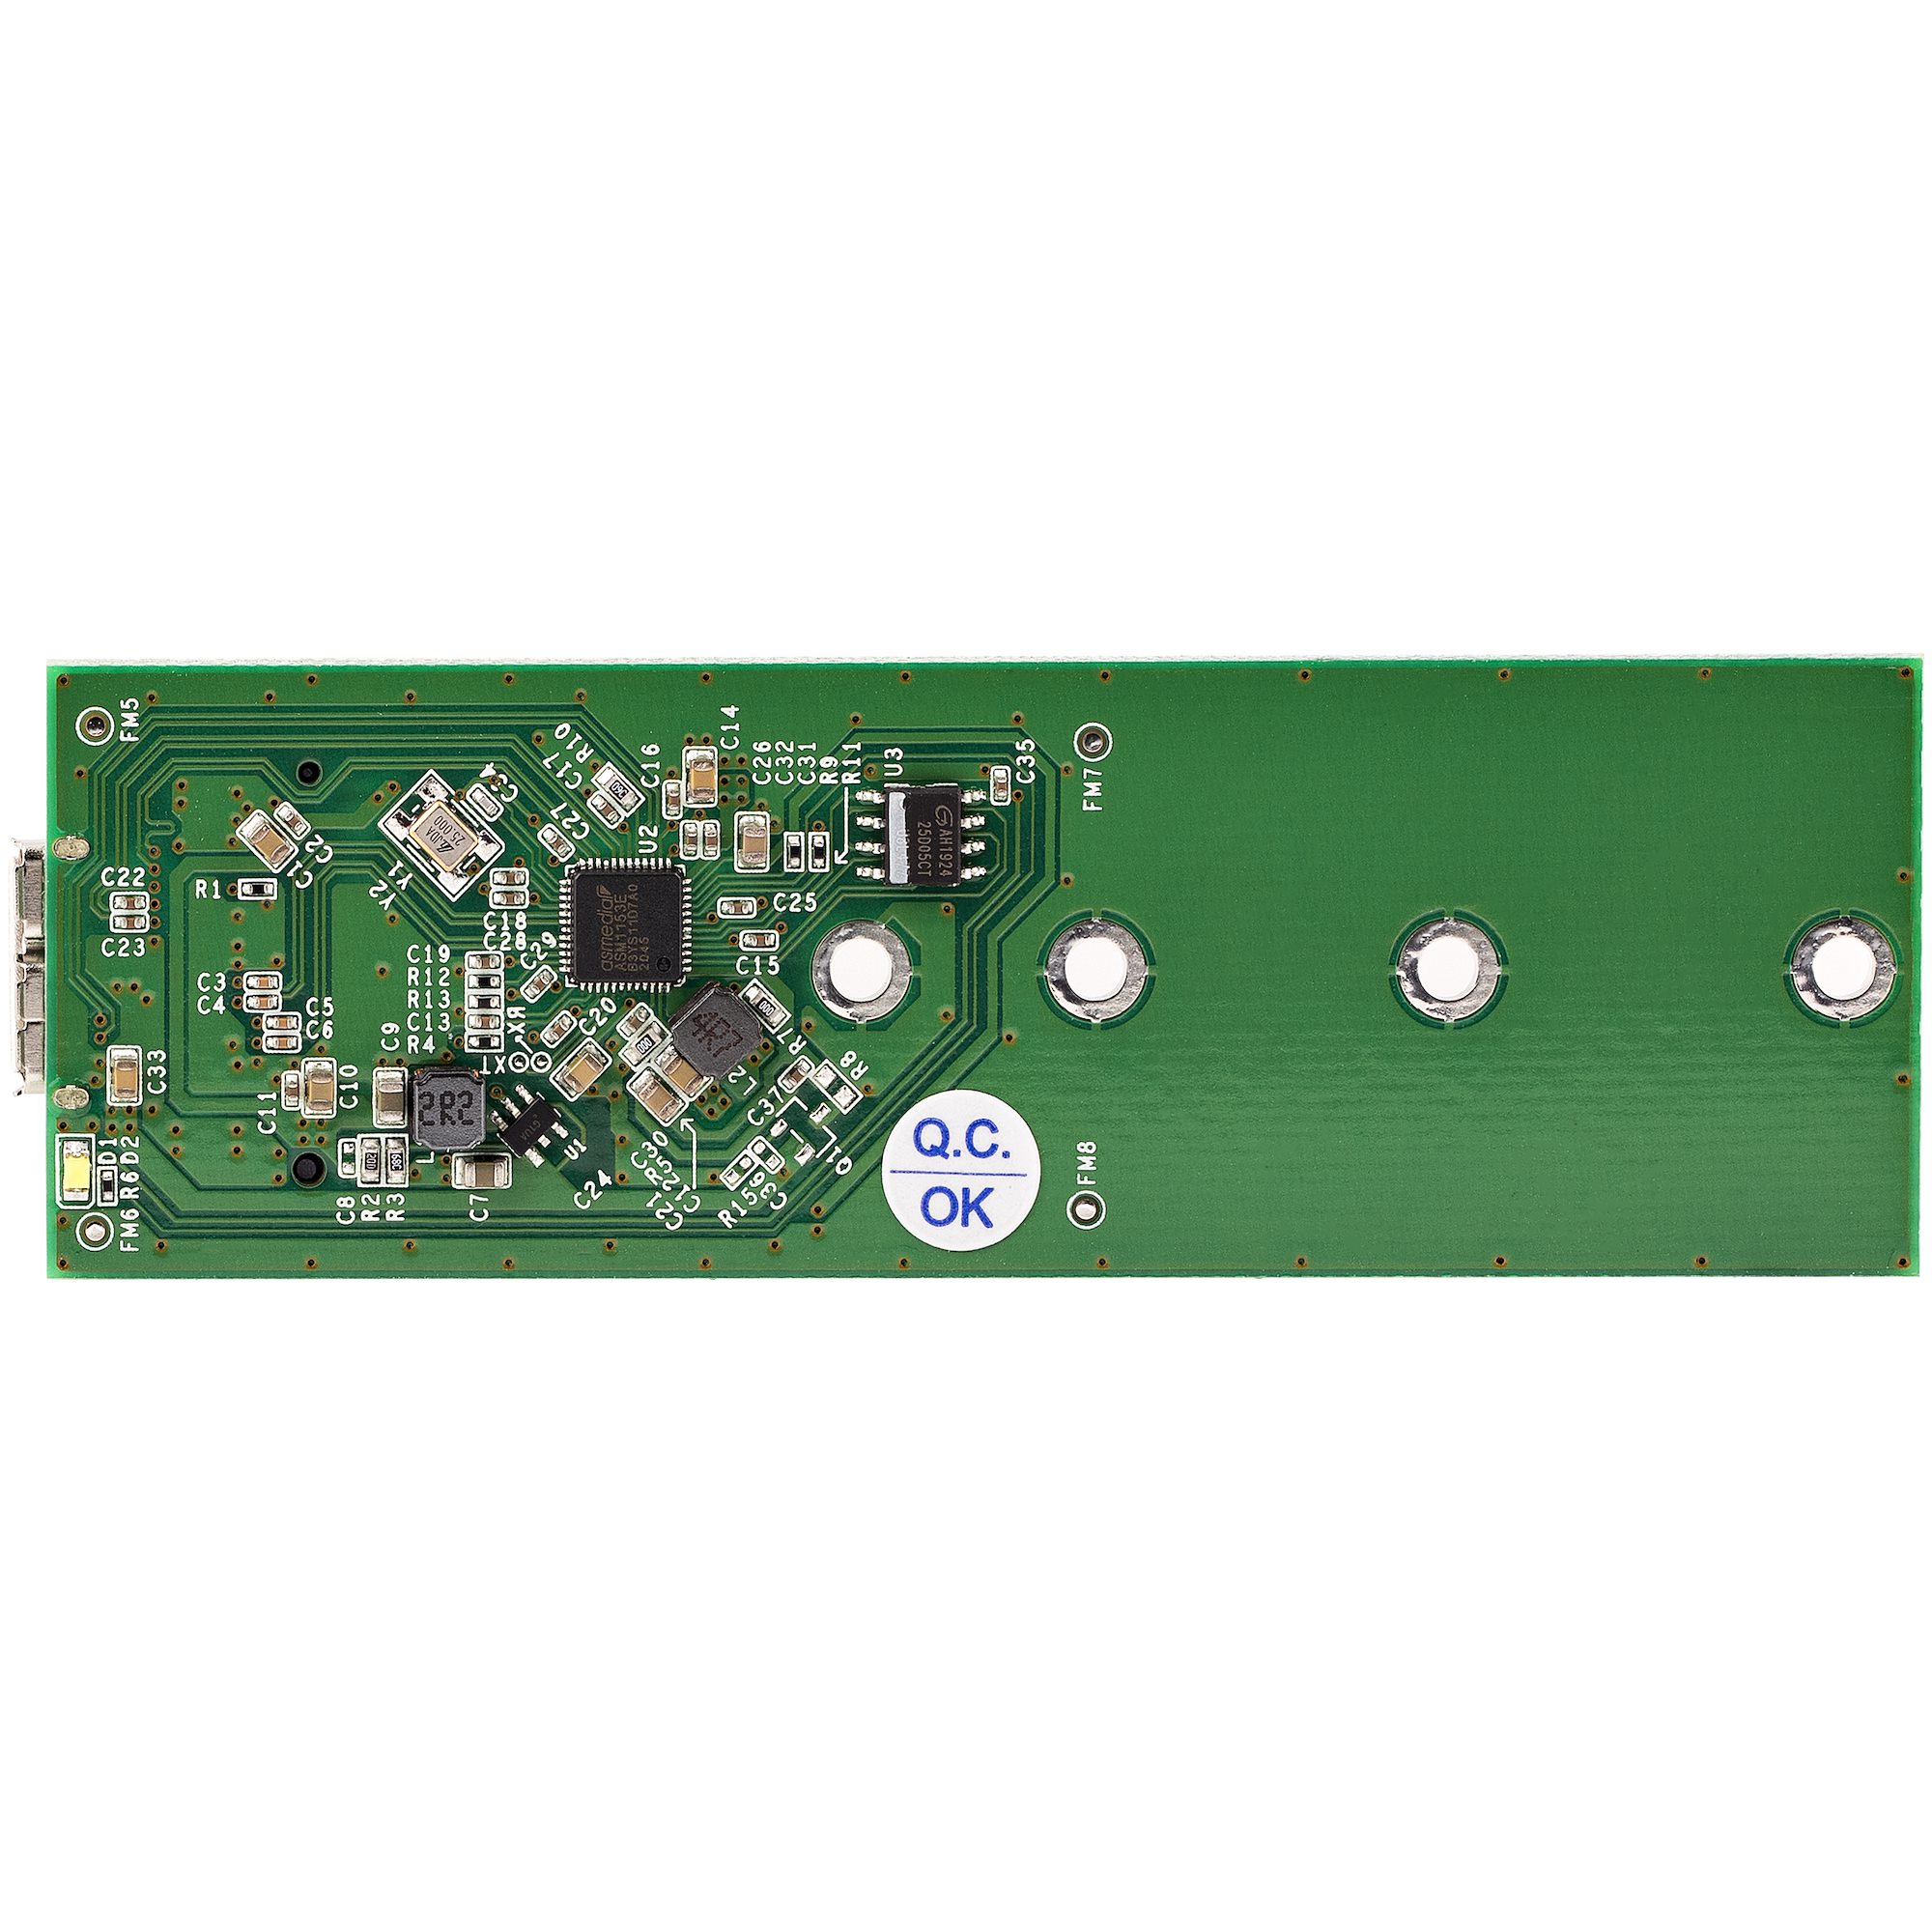 StarTech.com Boîtier USB 3.1 pour SSD M.2 MVMe PCIe M-Key avec